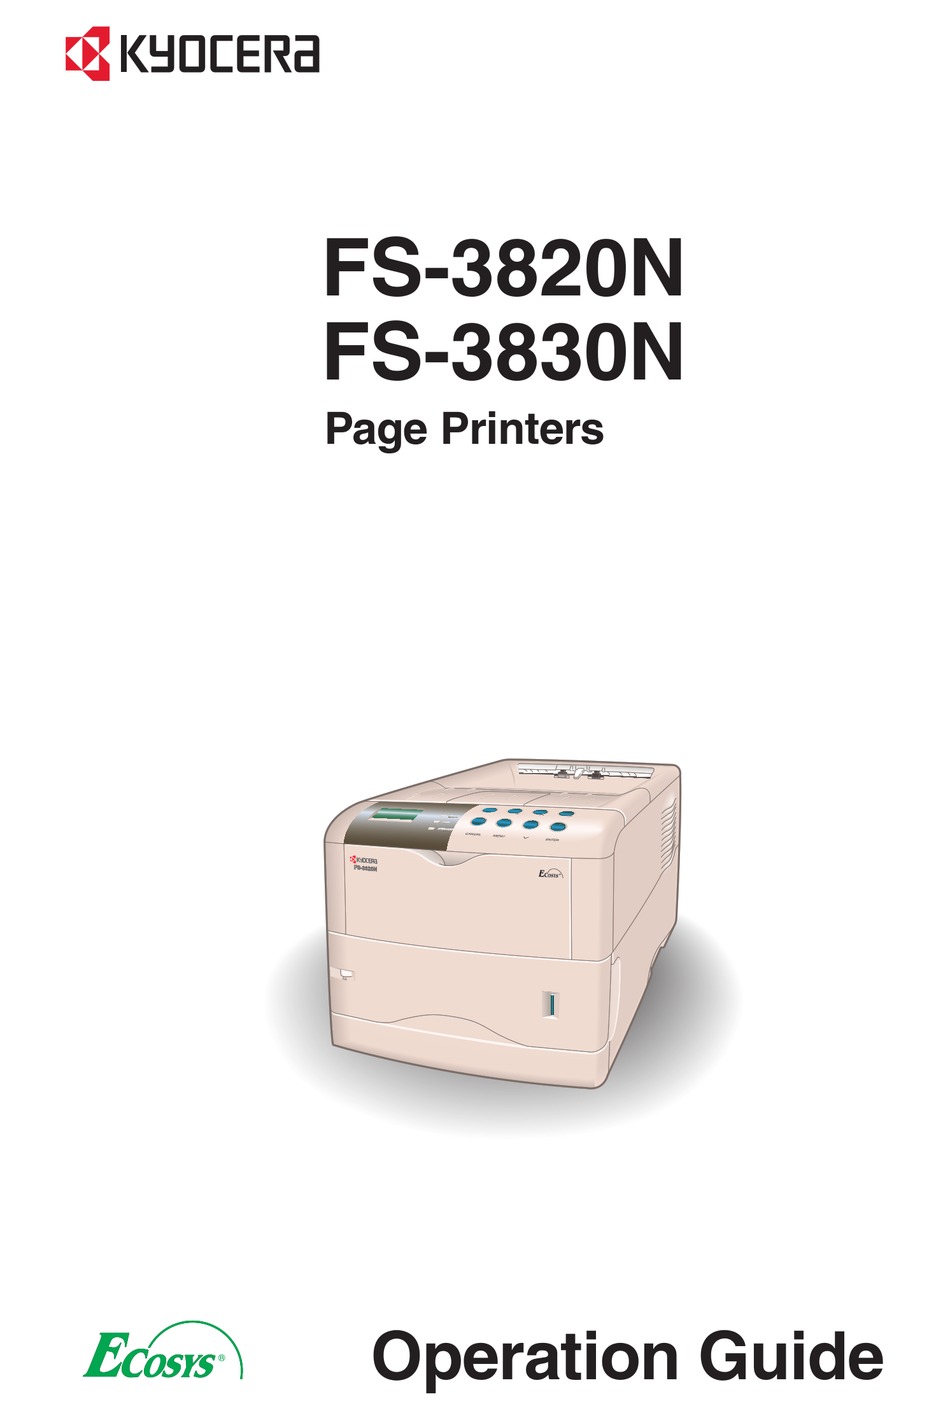 kyocera mita fs 3820n kx print driver for mac